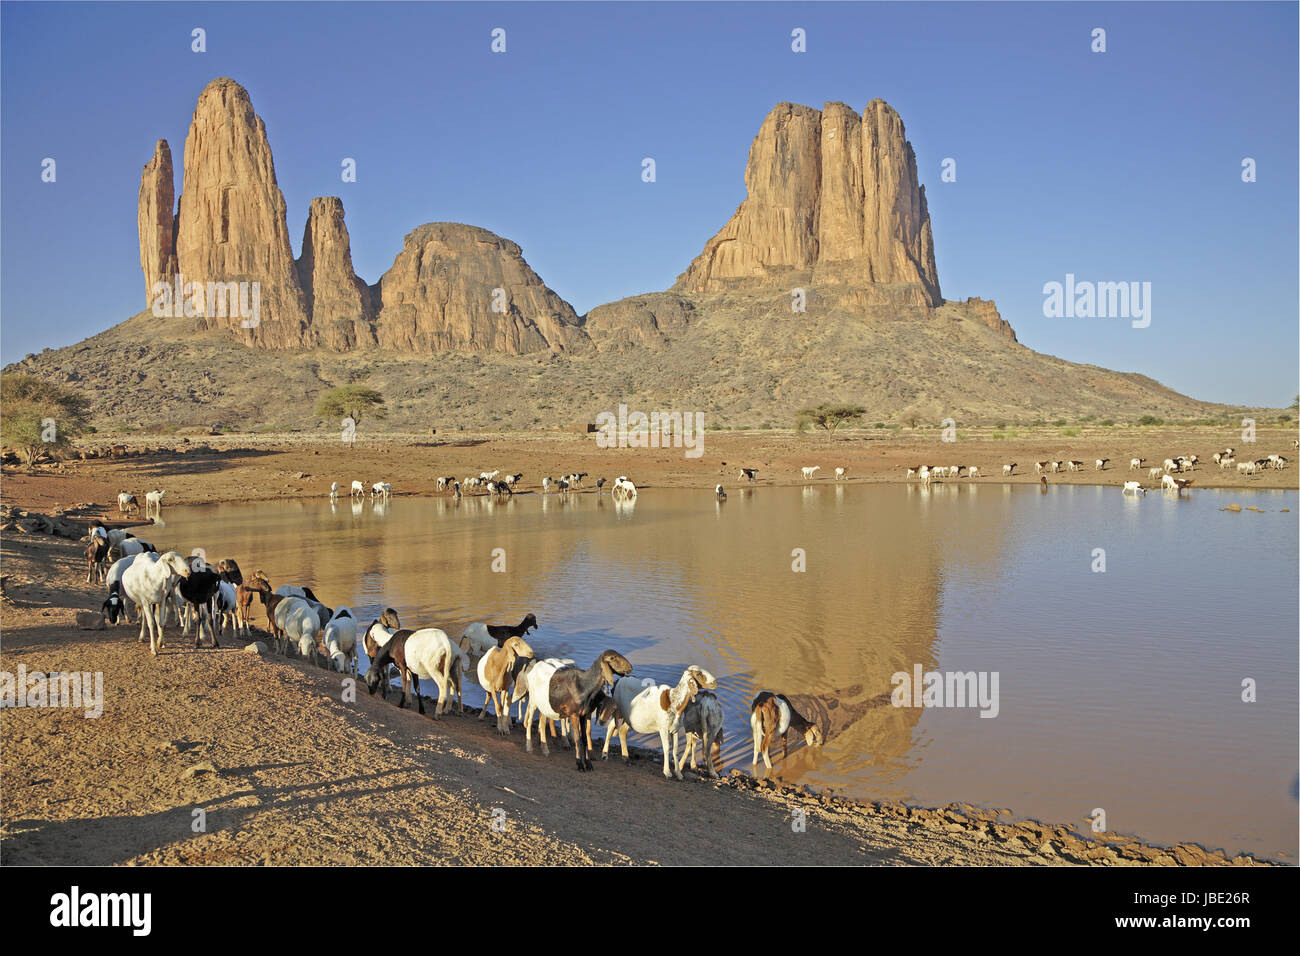 Westafrika, Mali, Sahara, Regione Gourma, berŸhmte Tafelberge von Hom- bori, FelstŸrme mit "Mano der Fatima', trŸbes Wasserloch, Schaf- und Ziegen-Herde beim Trinken Foto Stock